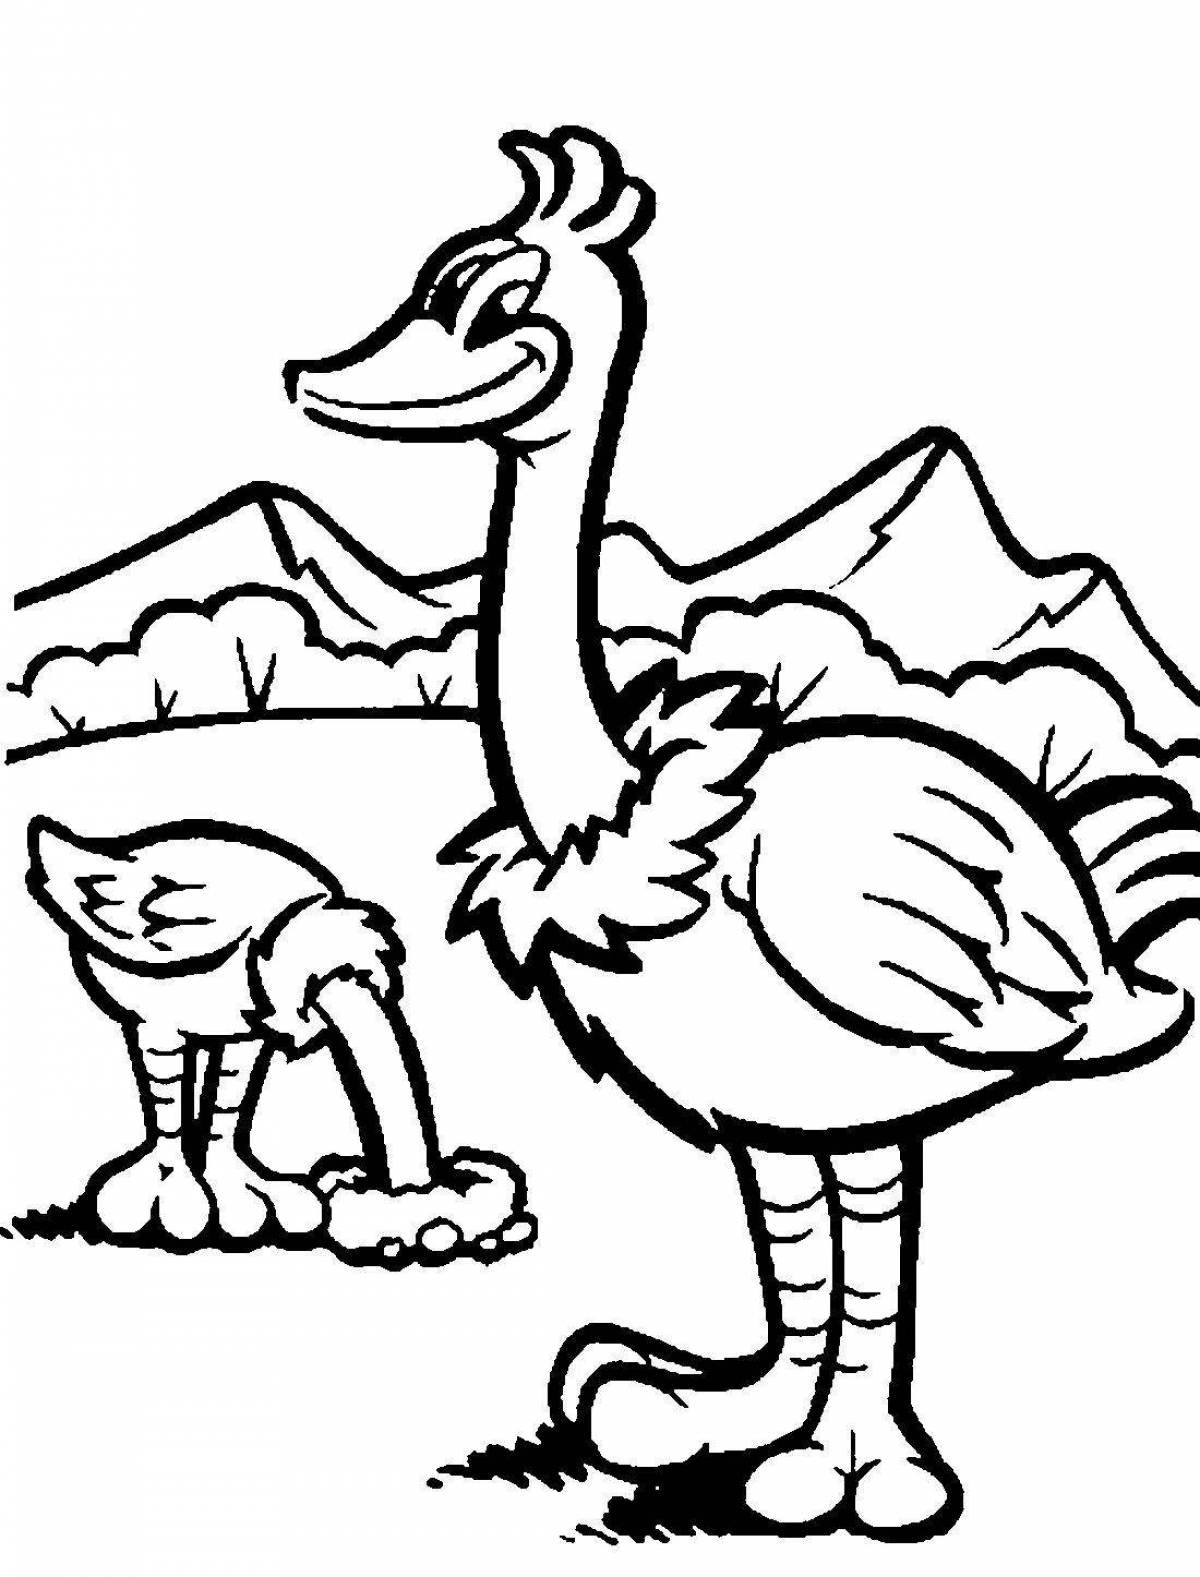 Развлекательная раскраска страуса для детей